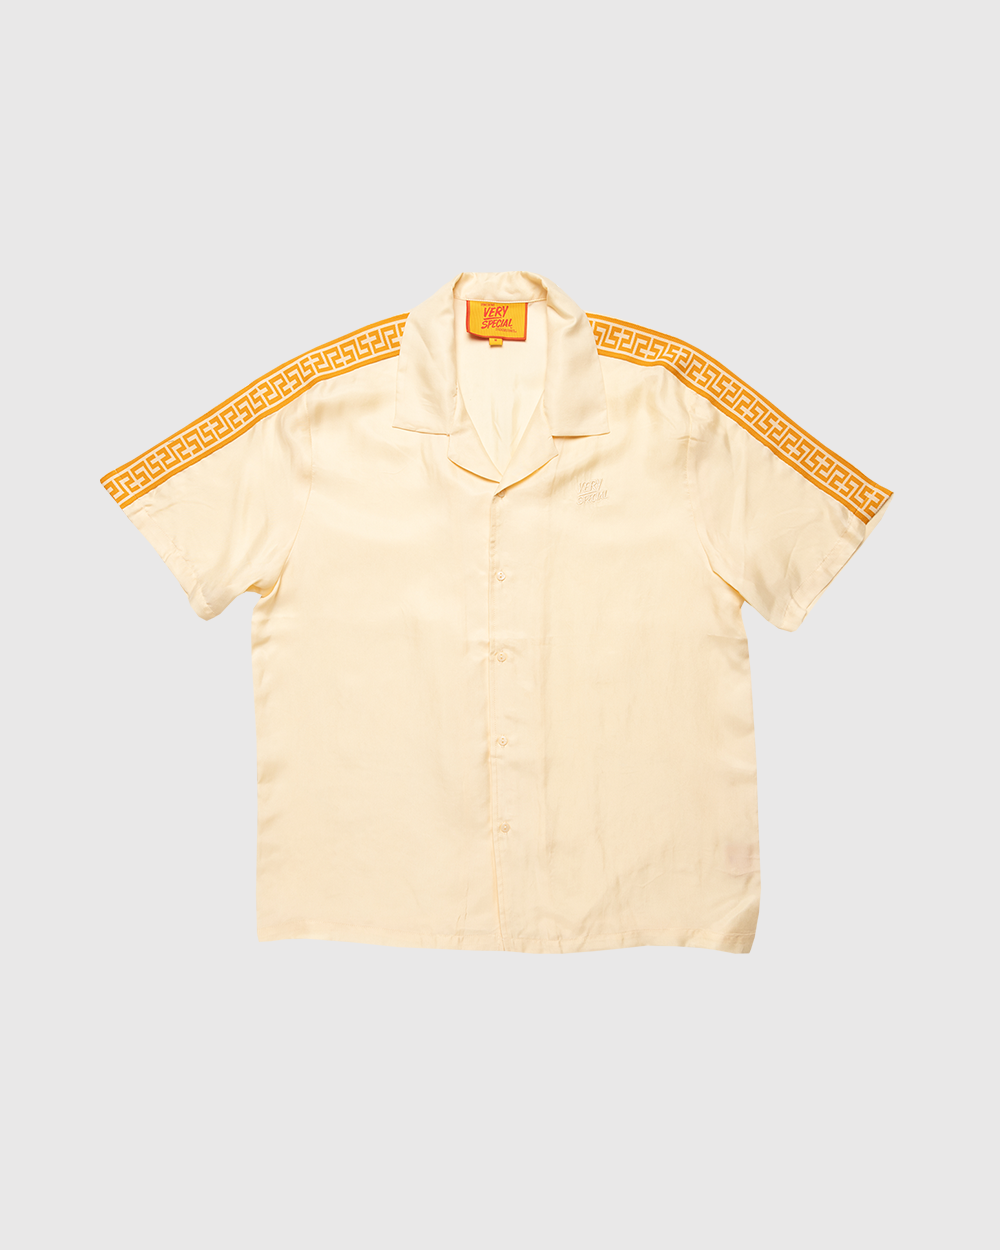 Vanilla "Geo" Resort Shirt